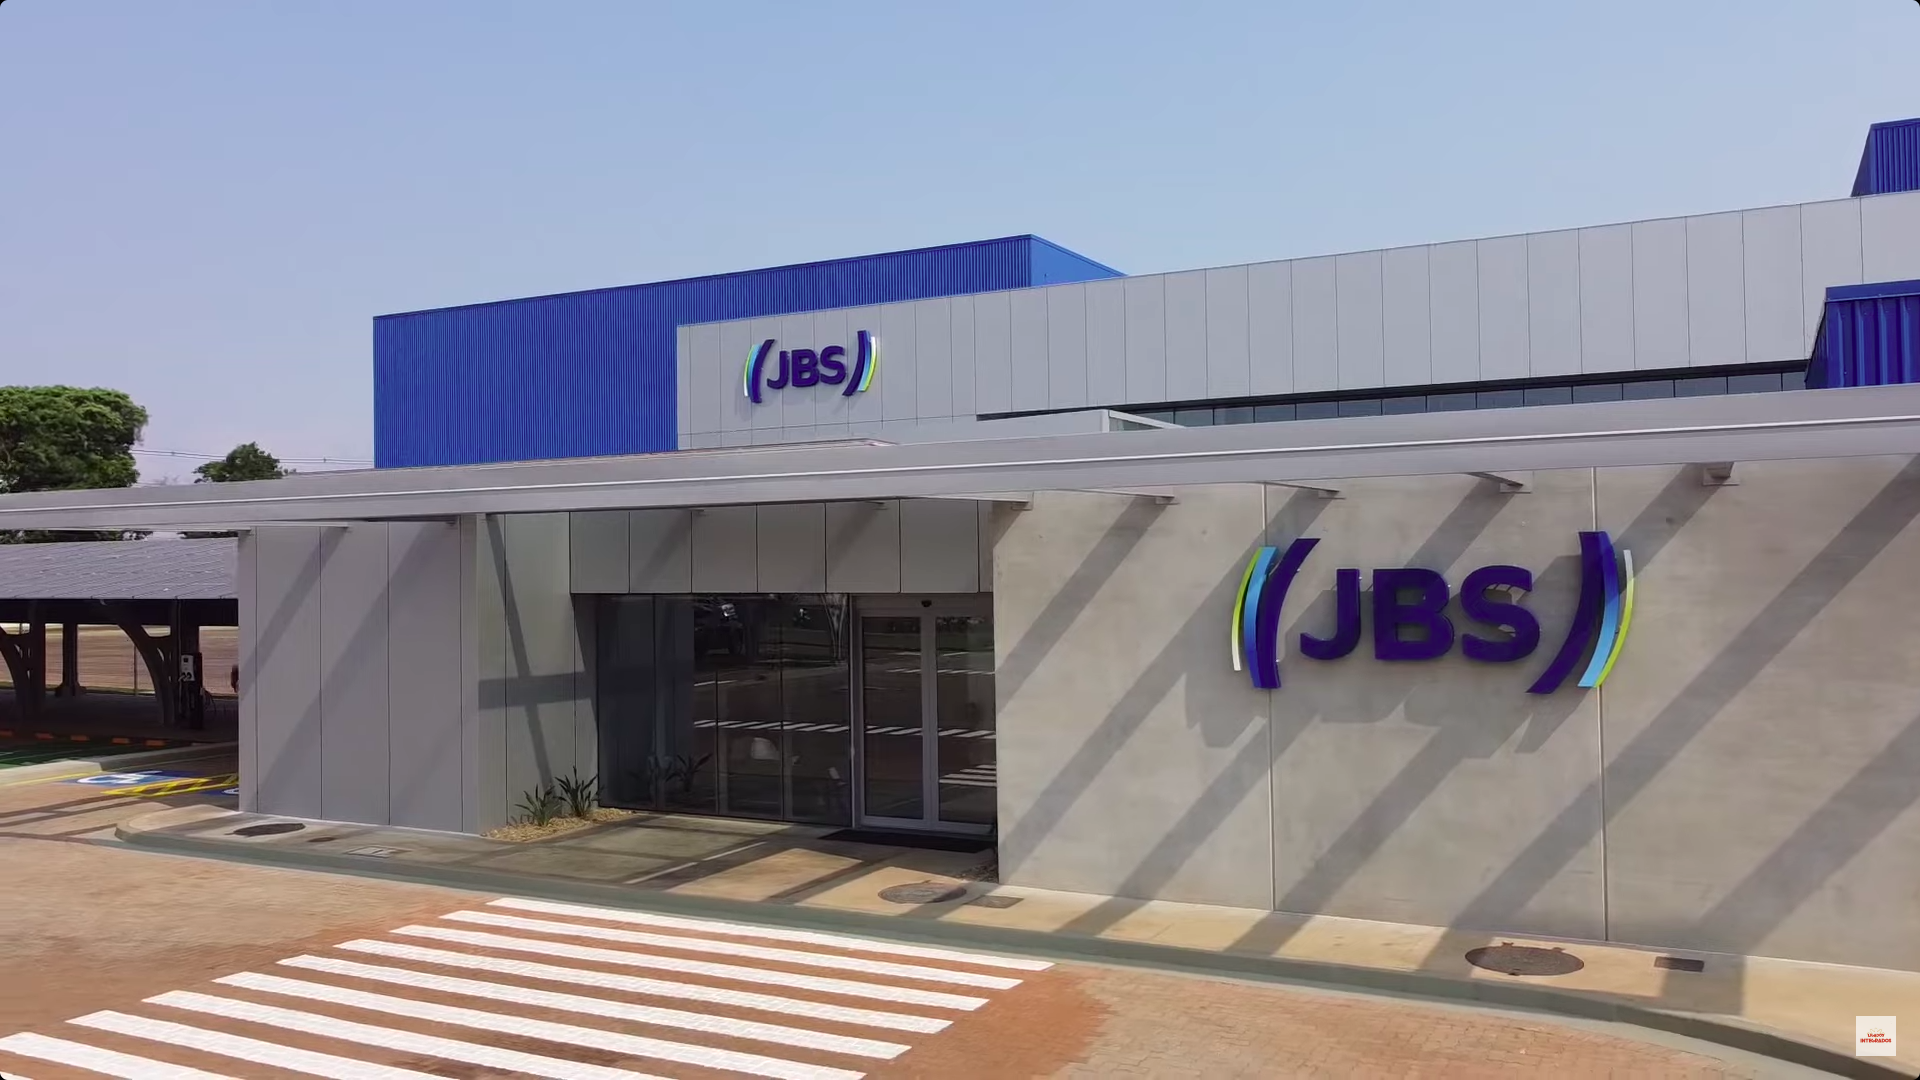 JBS inaugura fábricas futurísticas no norte do Paraná